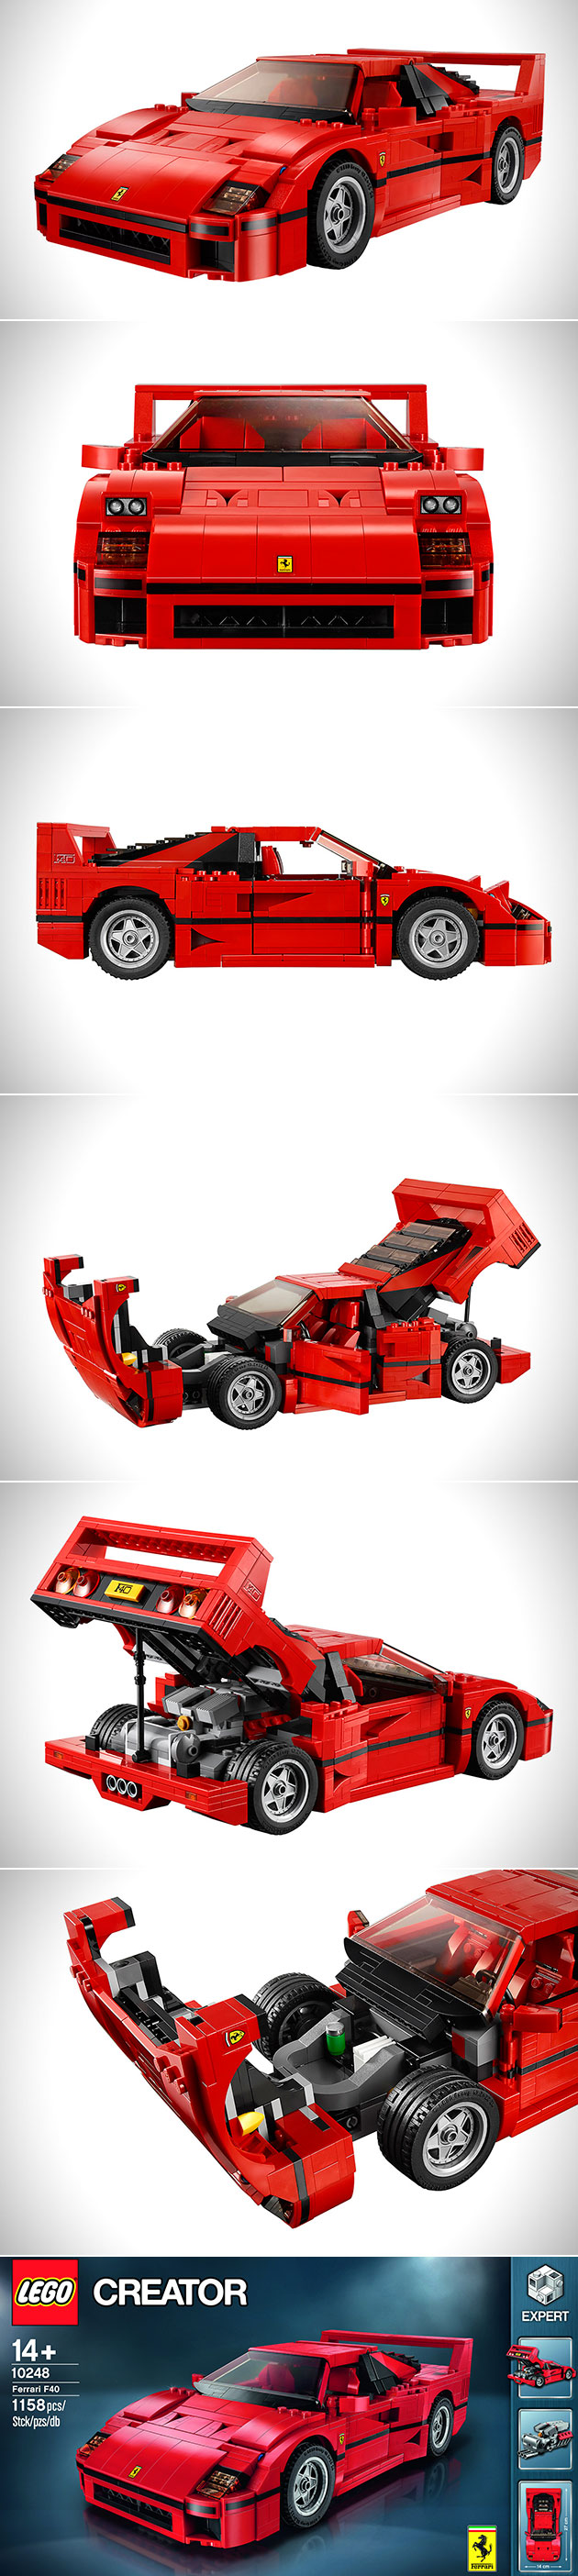 LEGO Creator Ferrari F40